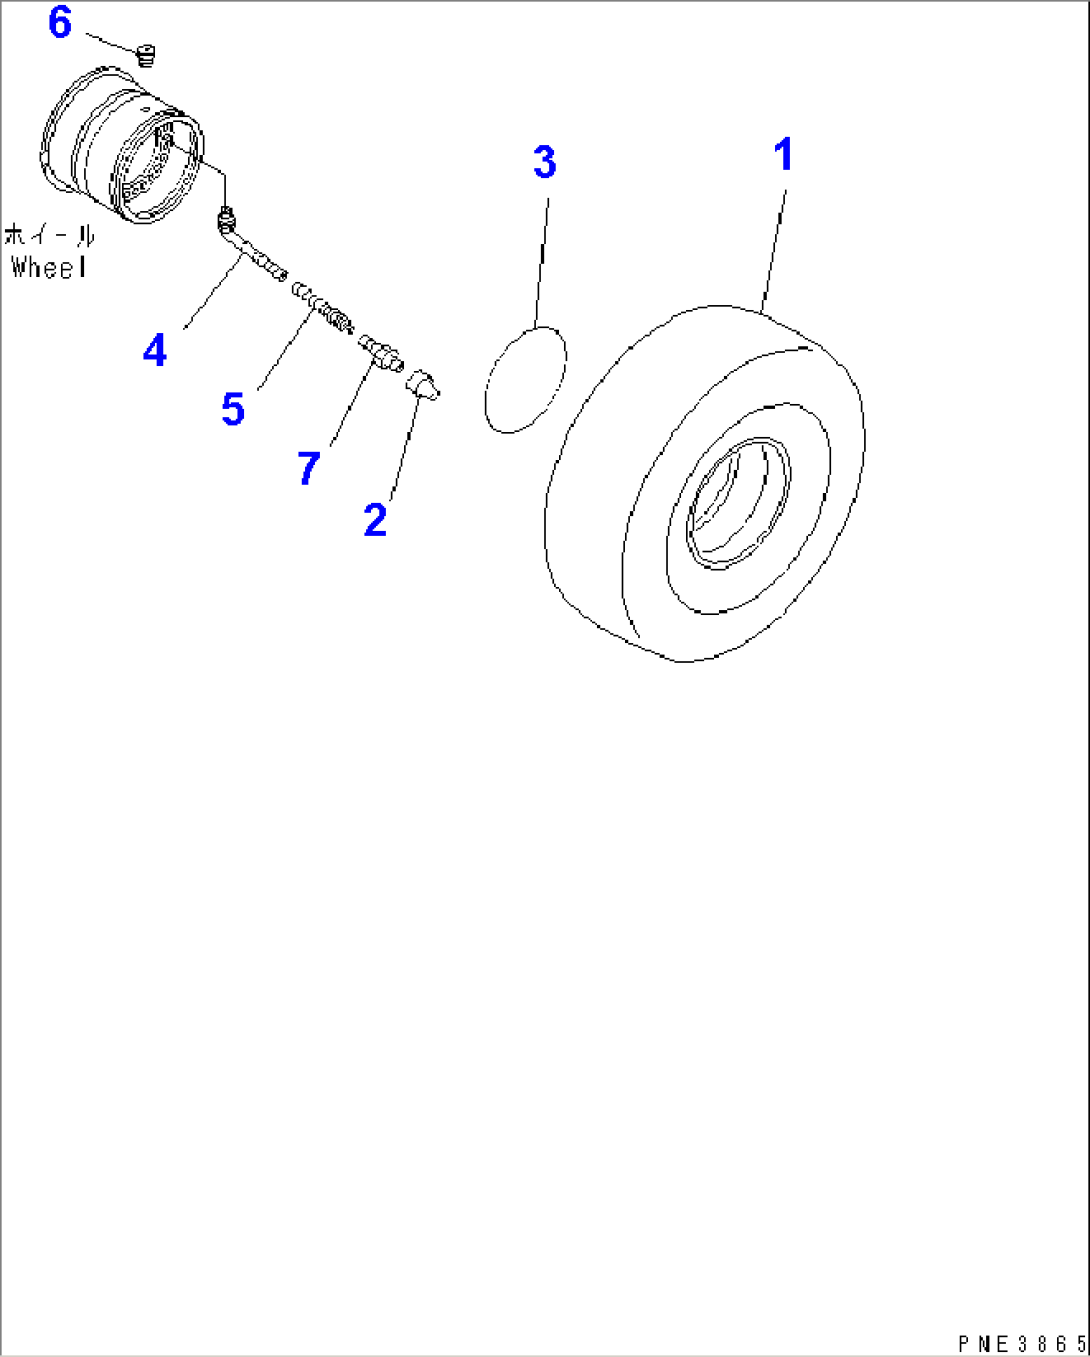 TIRE (26.5-25-20PR-L3) (TUBELESS)